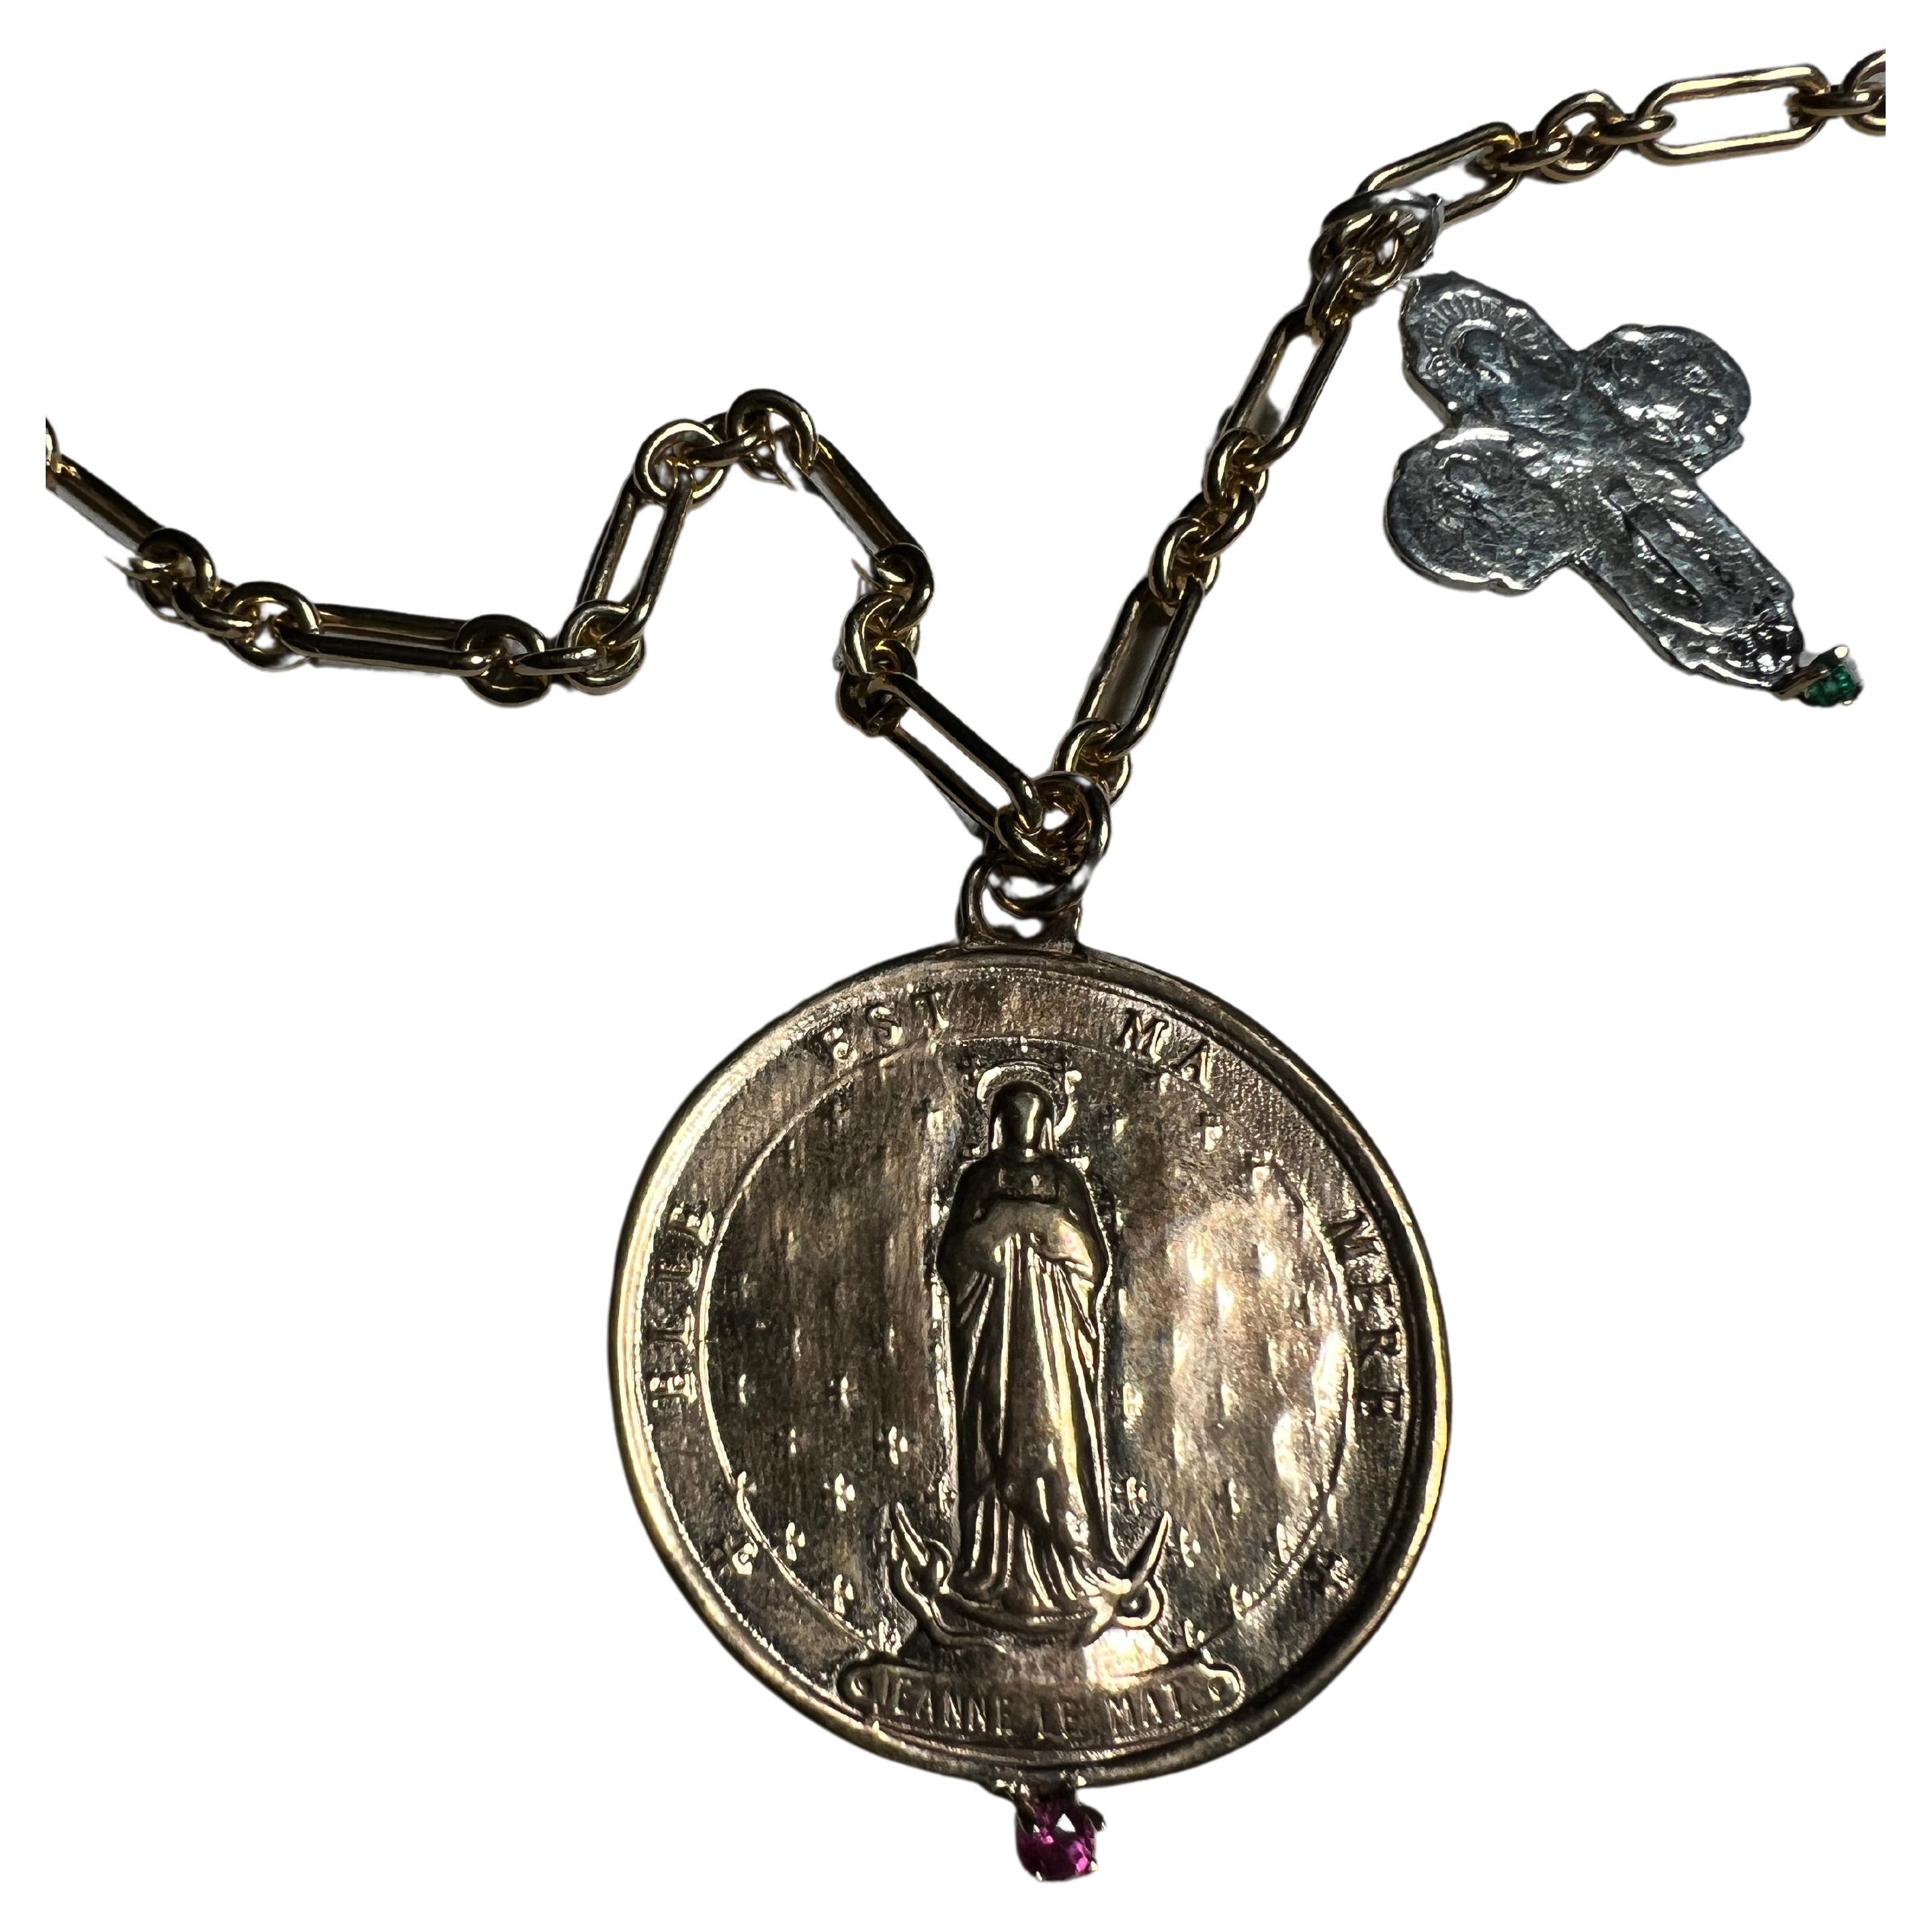 Emerald Prong Set Silber Kreuz und Medaille Münze mit Jeanne Le Mat hält einen Rubin auf einem langen Gold gefüllt Kette Halskette von Designer J Dauphin

Exklusives Stück mit einer runden Bronzemünze mit der französischen Heiligen Jeanne Le Mat,